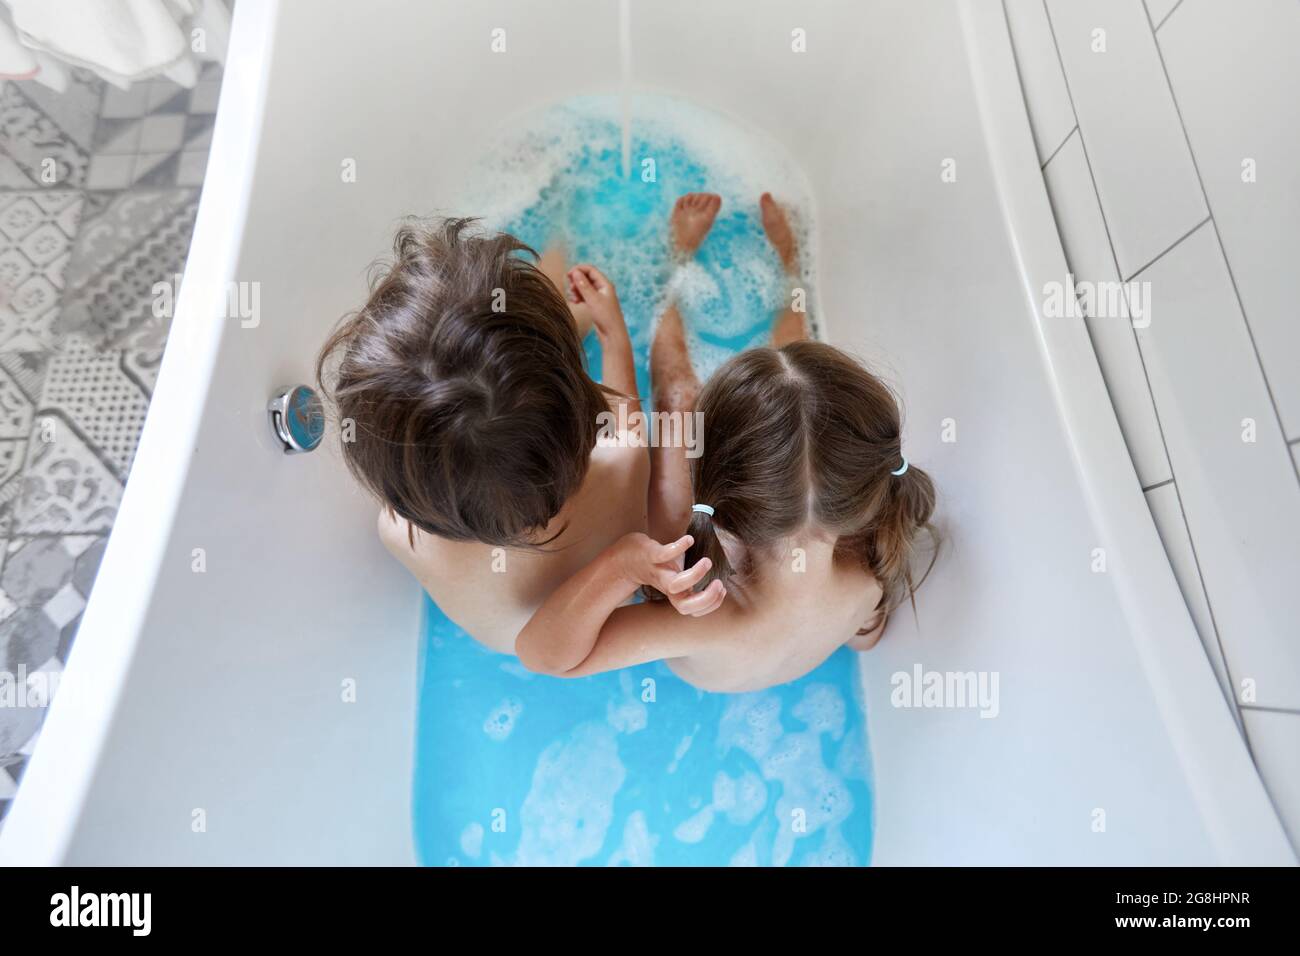 Cierre las piernas de los niños en la bañera con agua azul limpia, tubo de baño con las piernas humanas en el agua Foto de stock